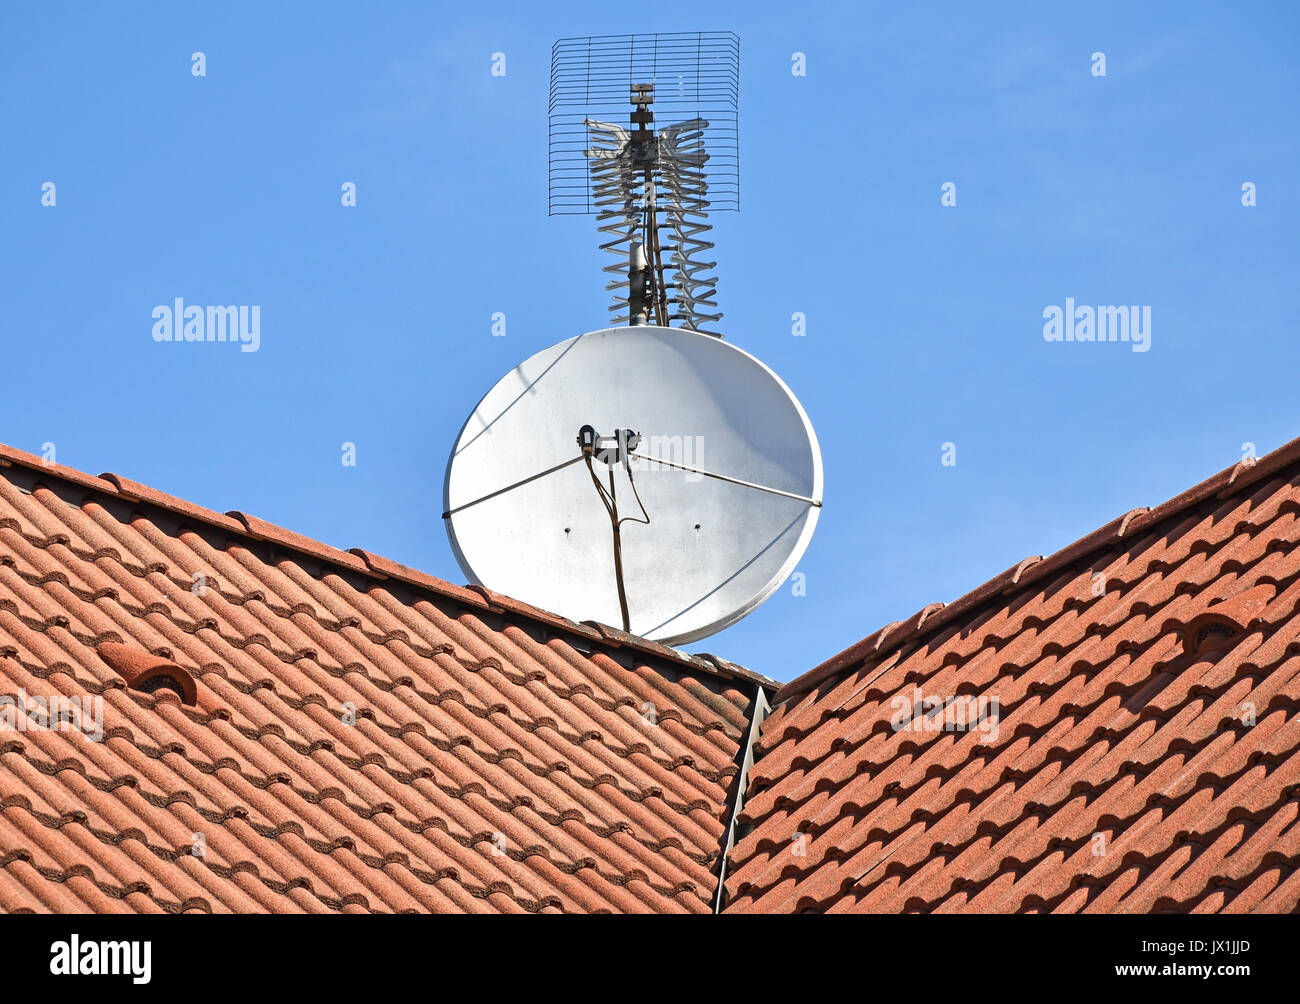 La parabole et antenne de télévision sur le toit d'un bâtiment Banque D'Images